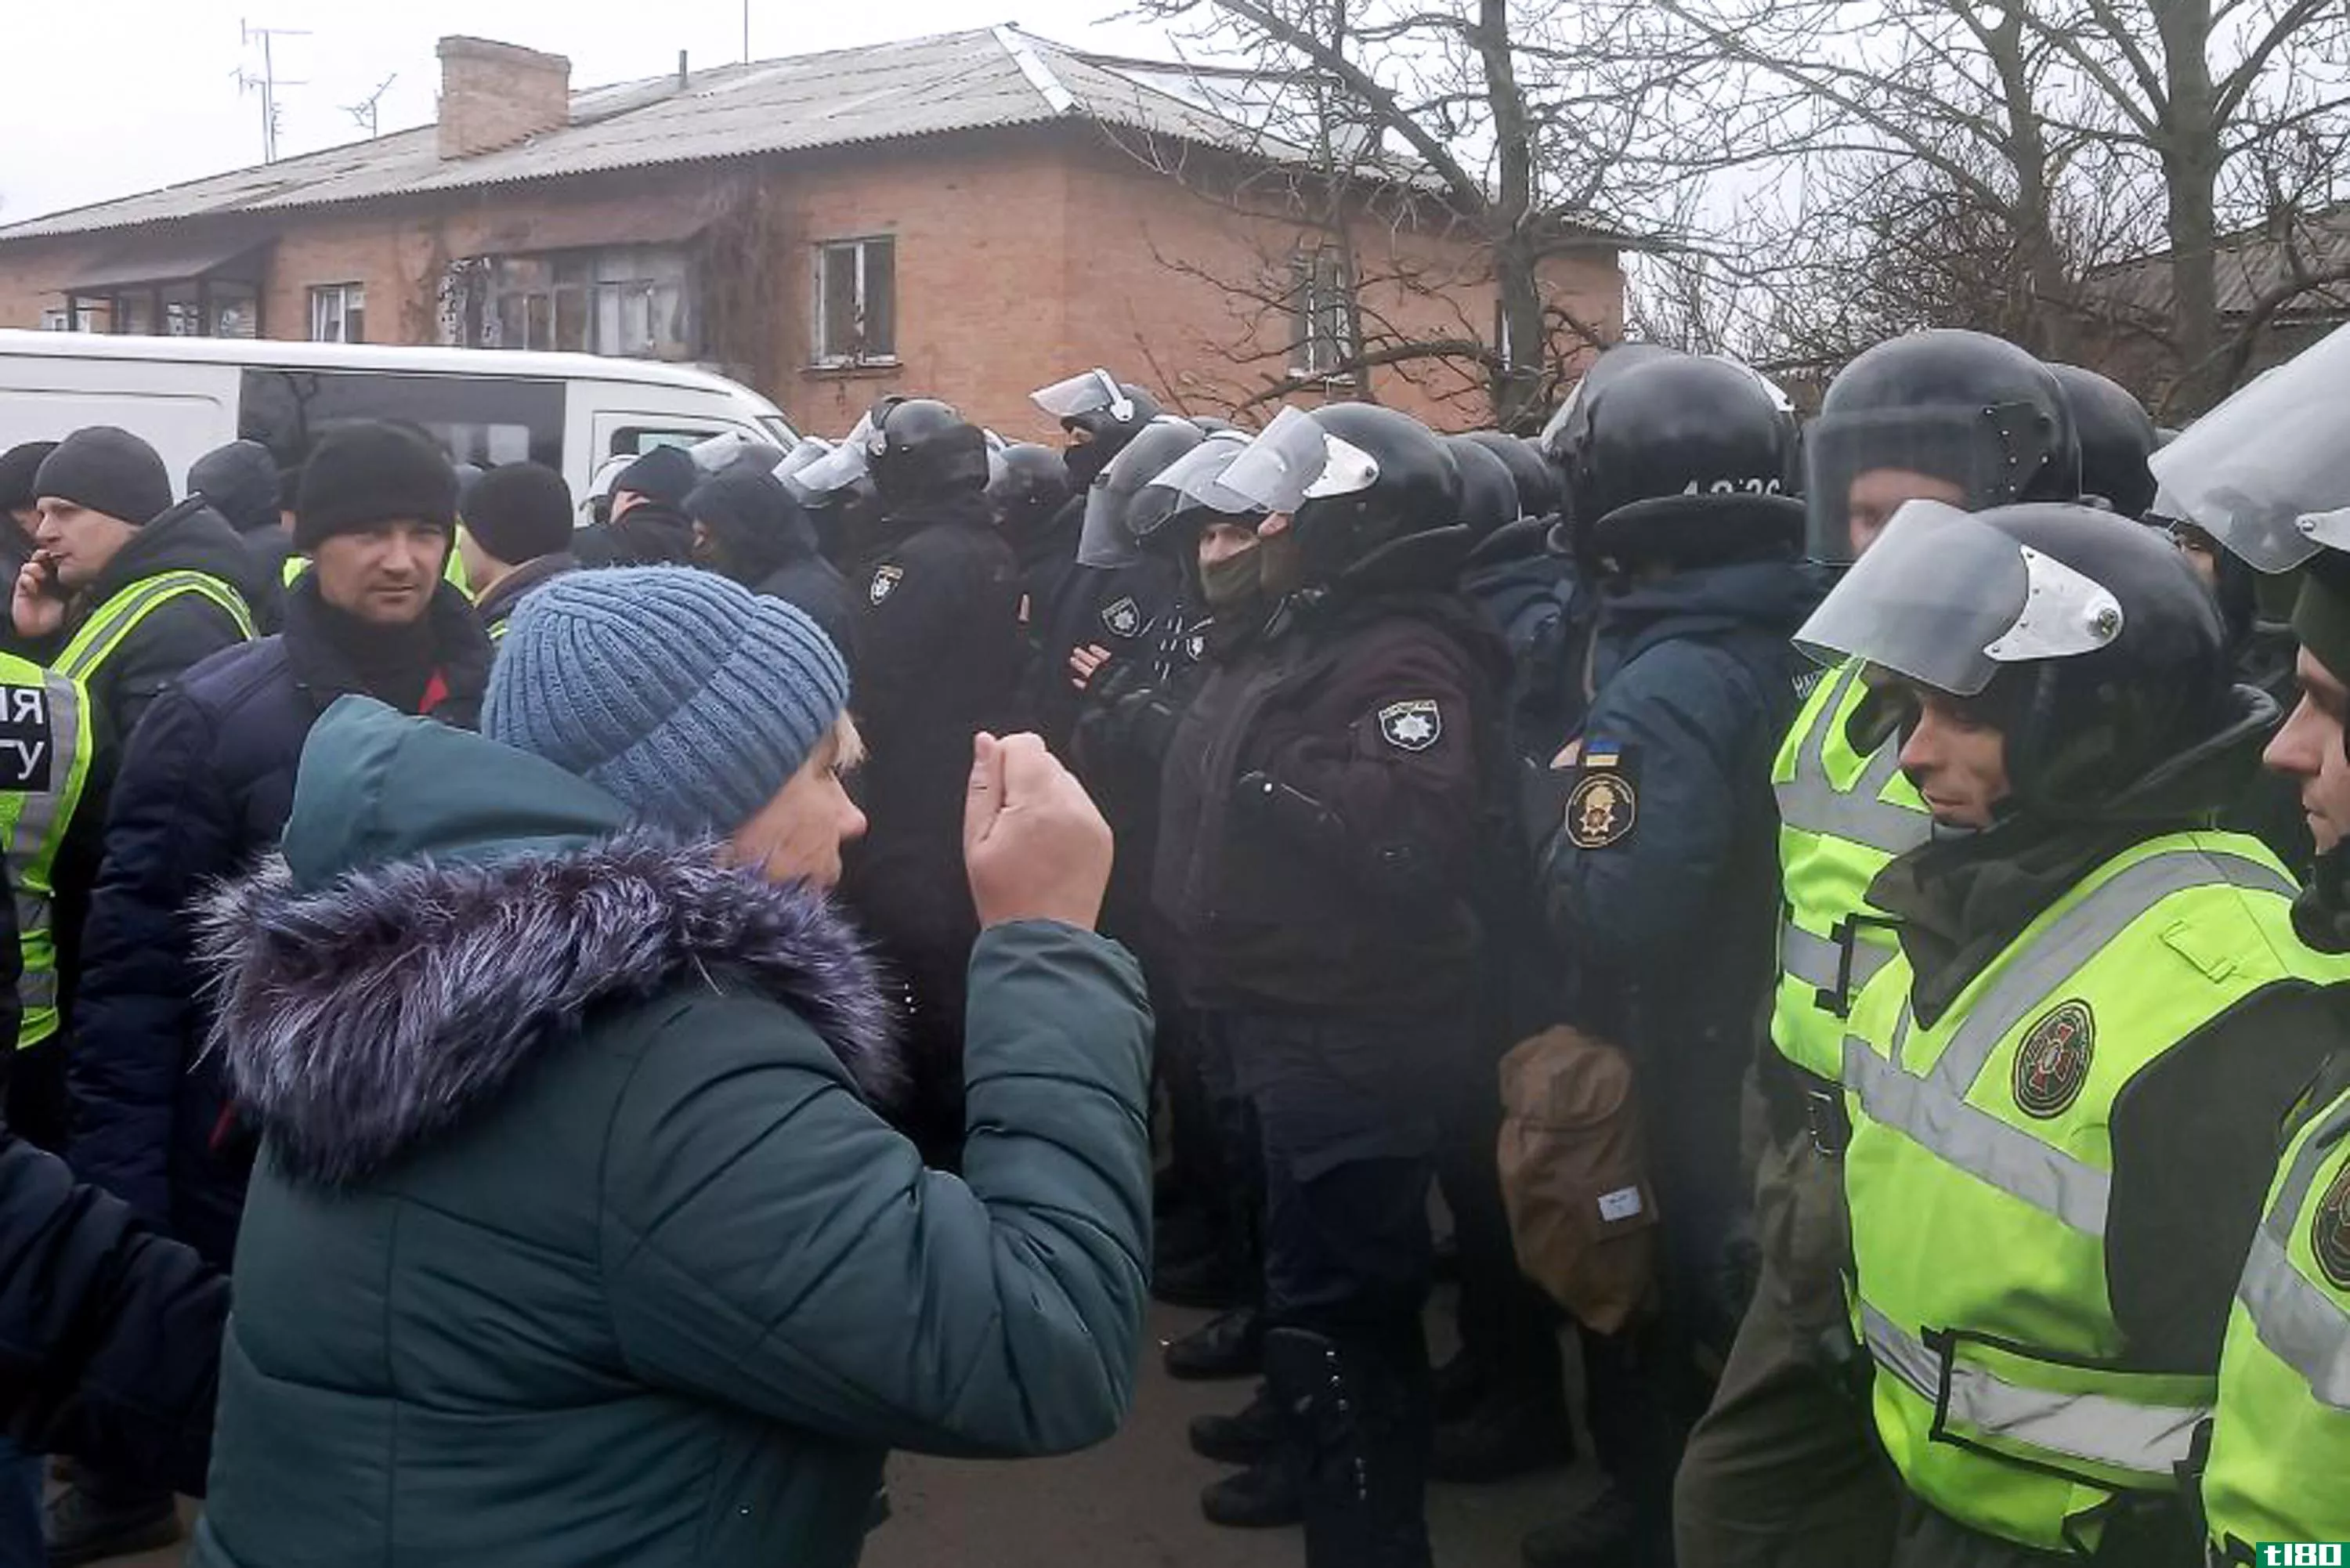 冠状病毒电子邮件骗局导致乌克兰发生暴力抗议